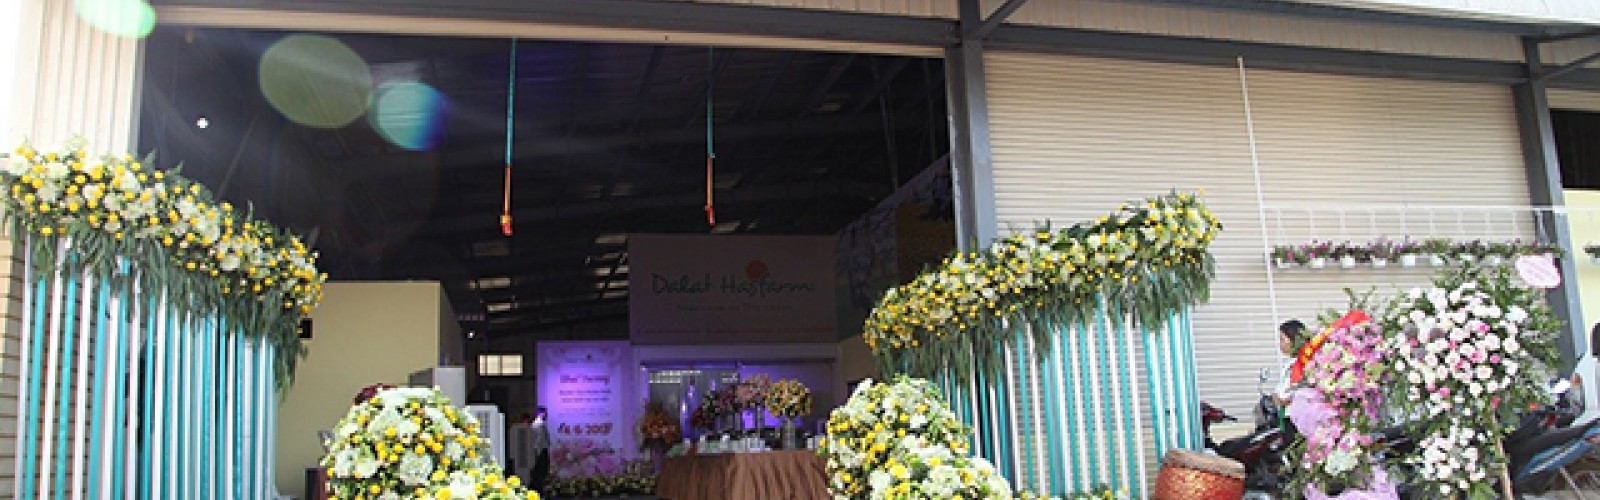 Dalat Hasfarm khai trương trung tâm phân phối hoa tươi tại Long Biên, Hà Nội